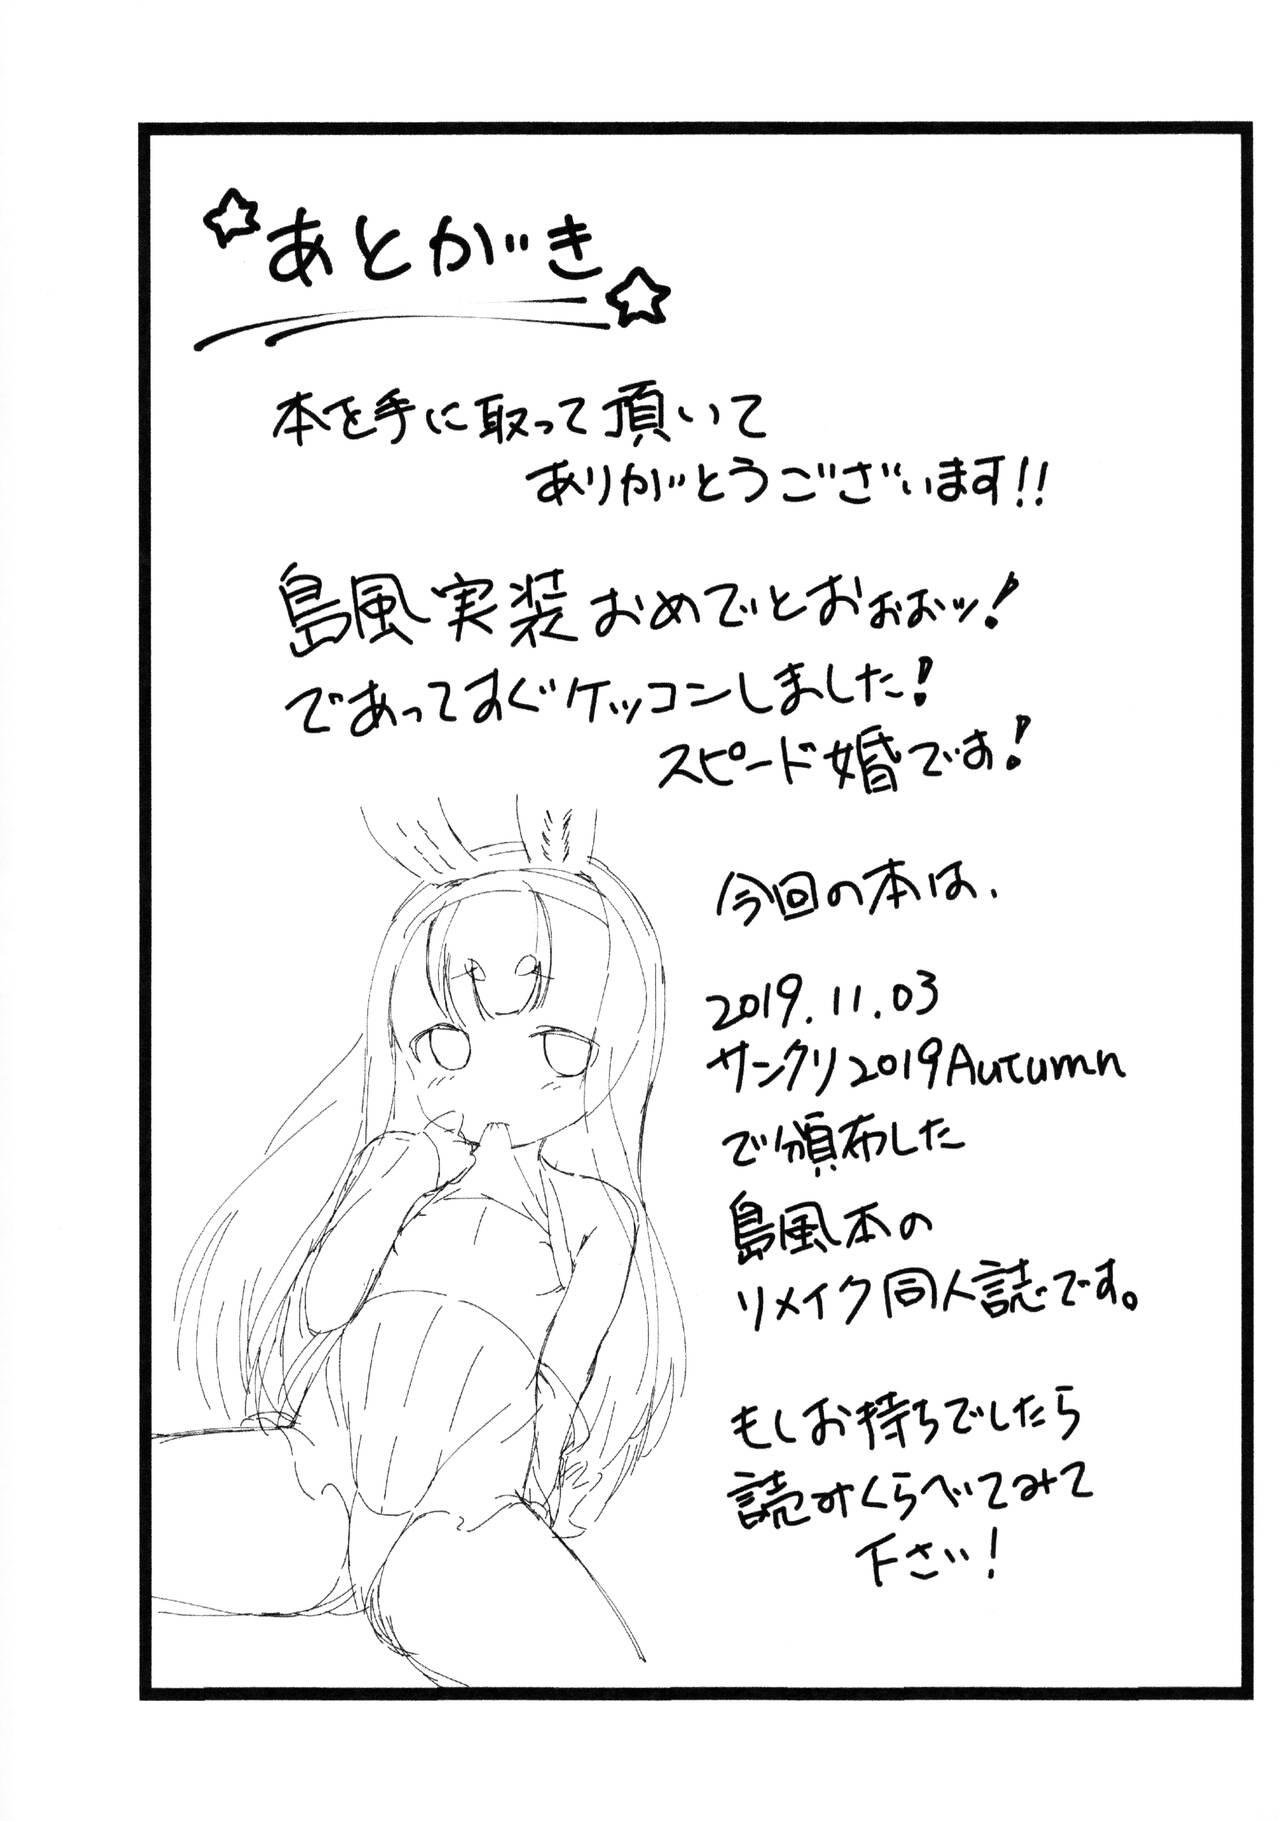 Relax RE: Shimakaze o Shiki shite hoshii de arimasu! - Azur lane Madura - Page 9